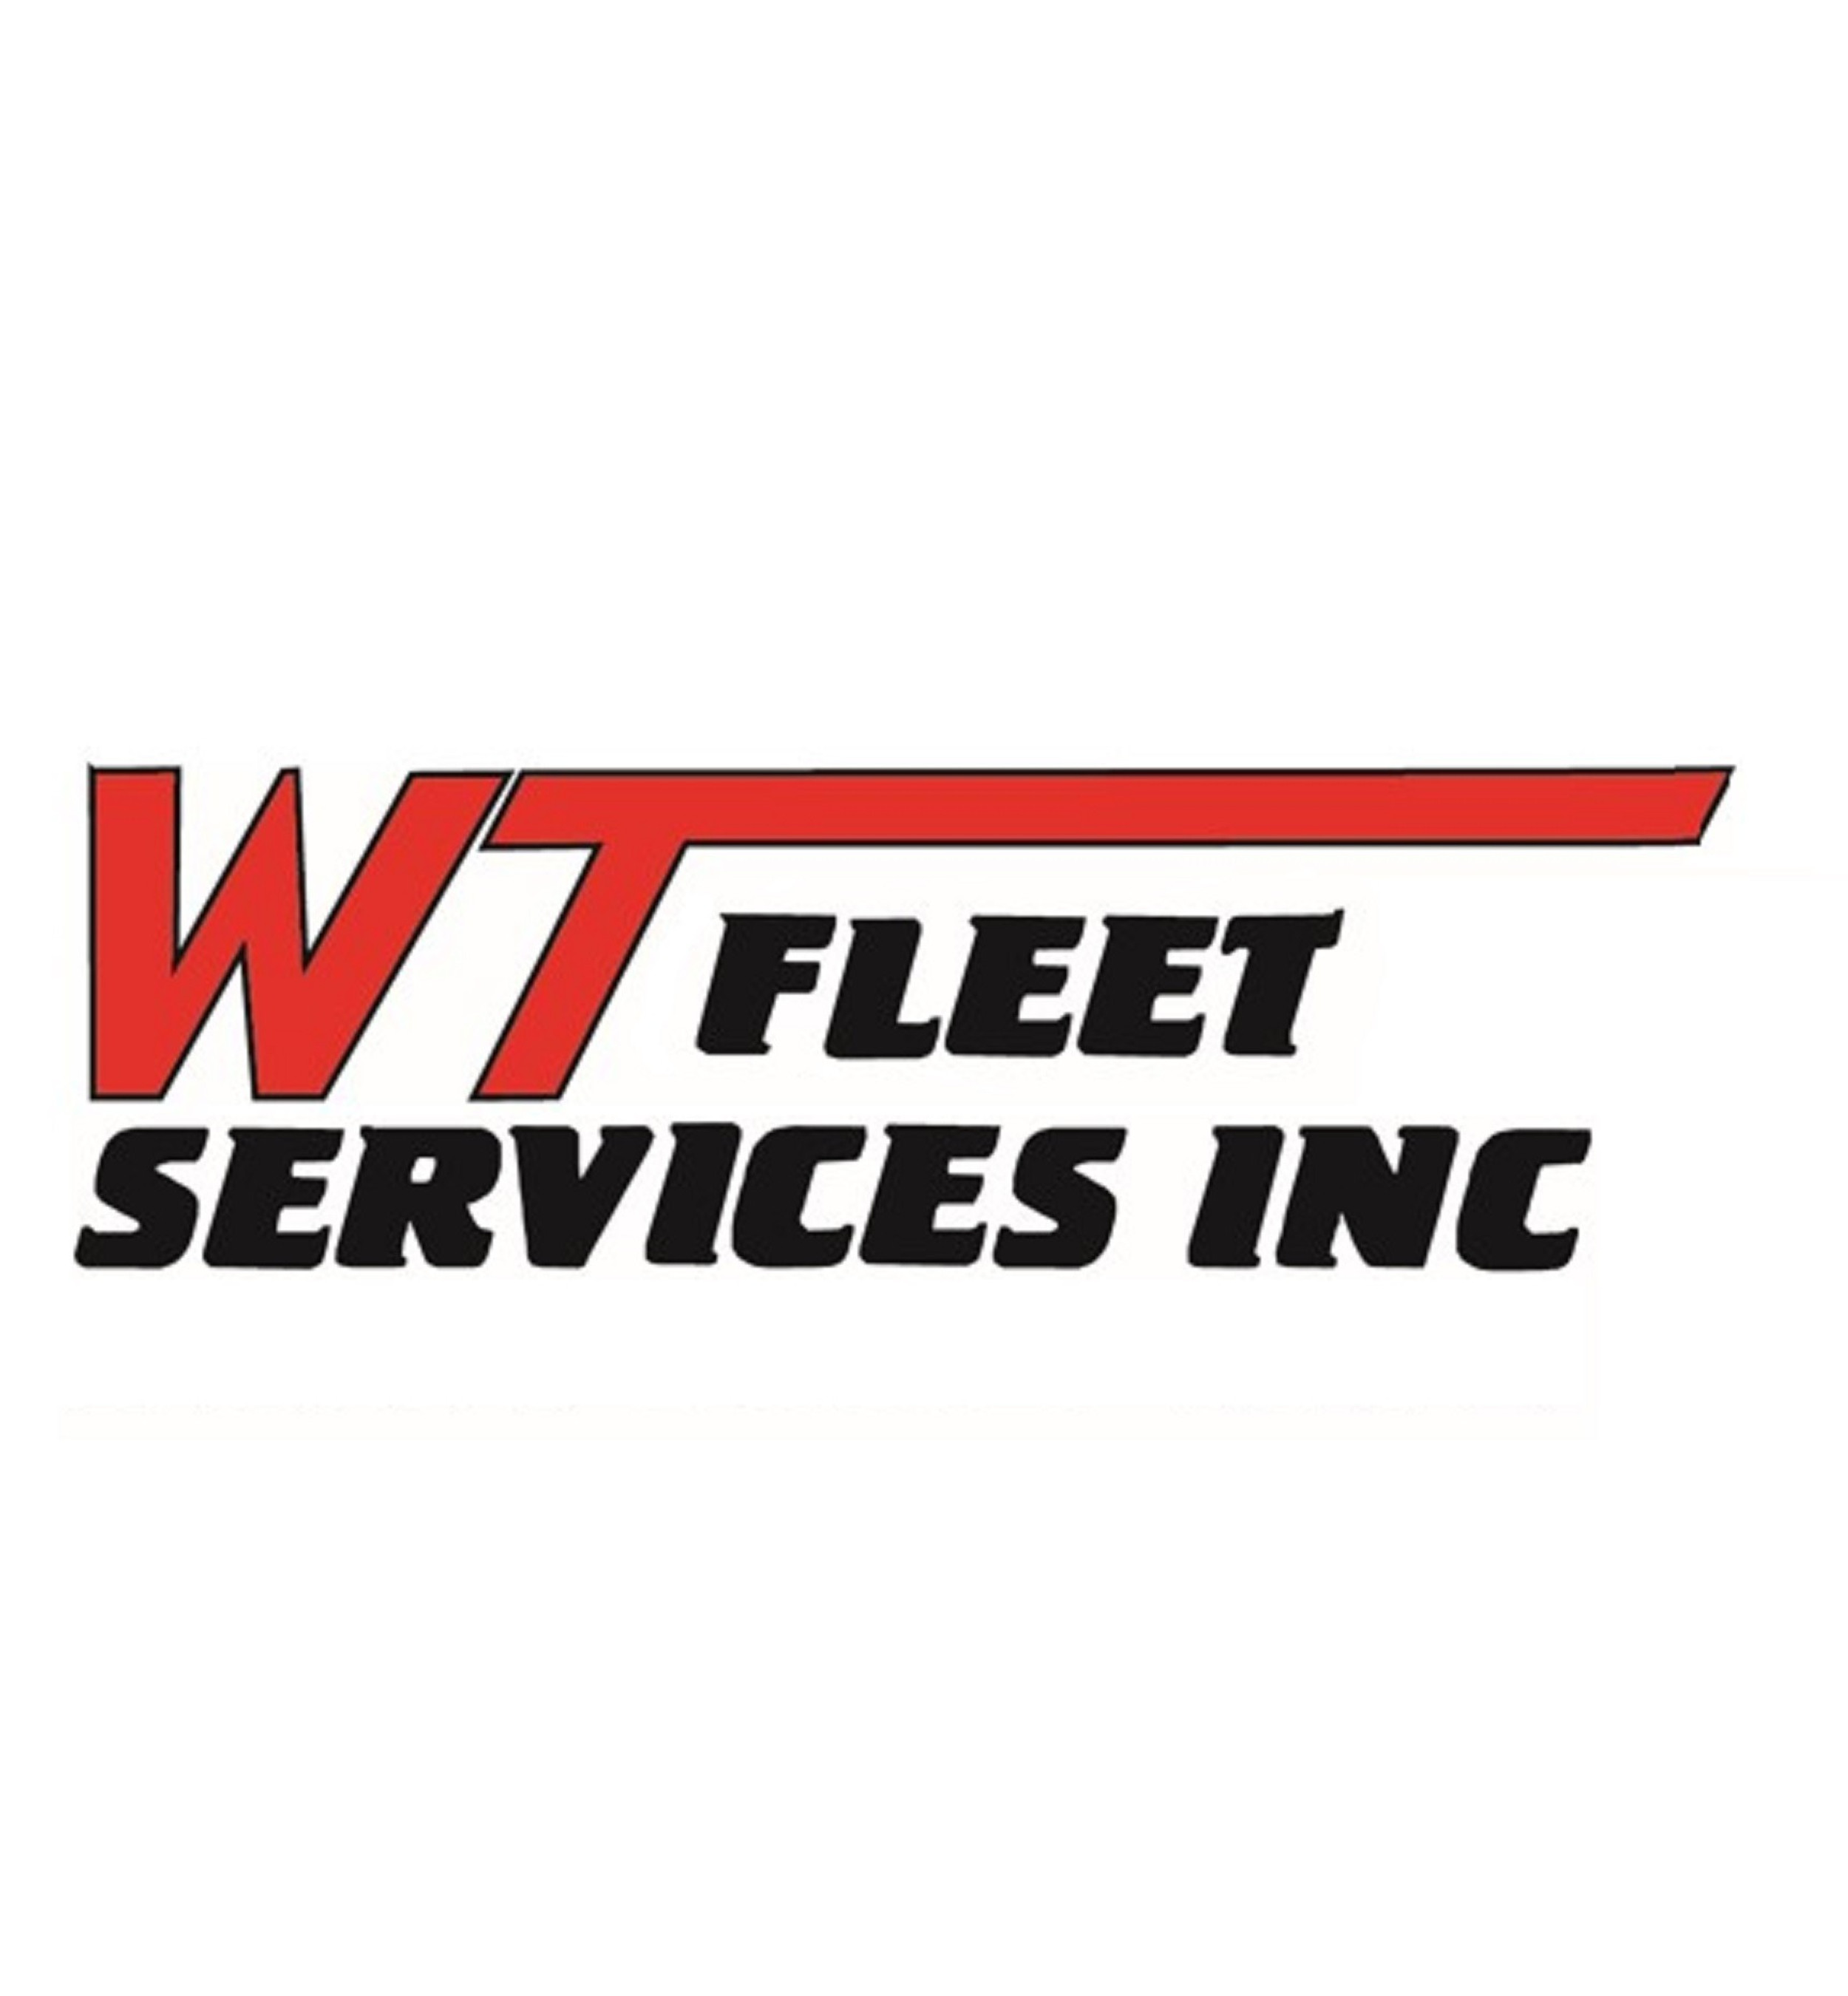 WT Fleet Services